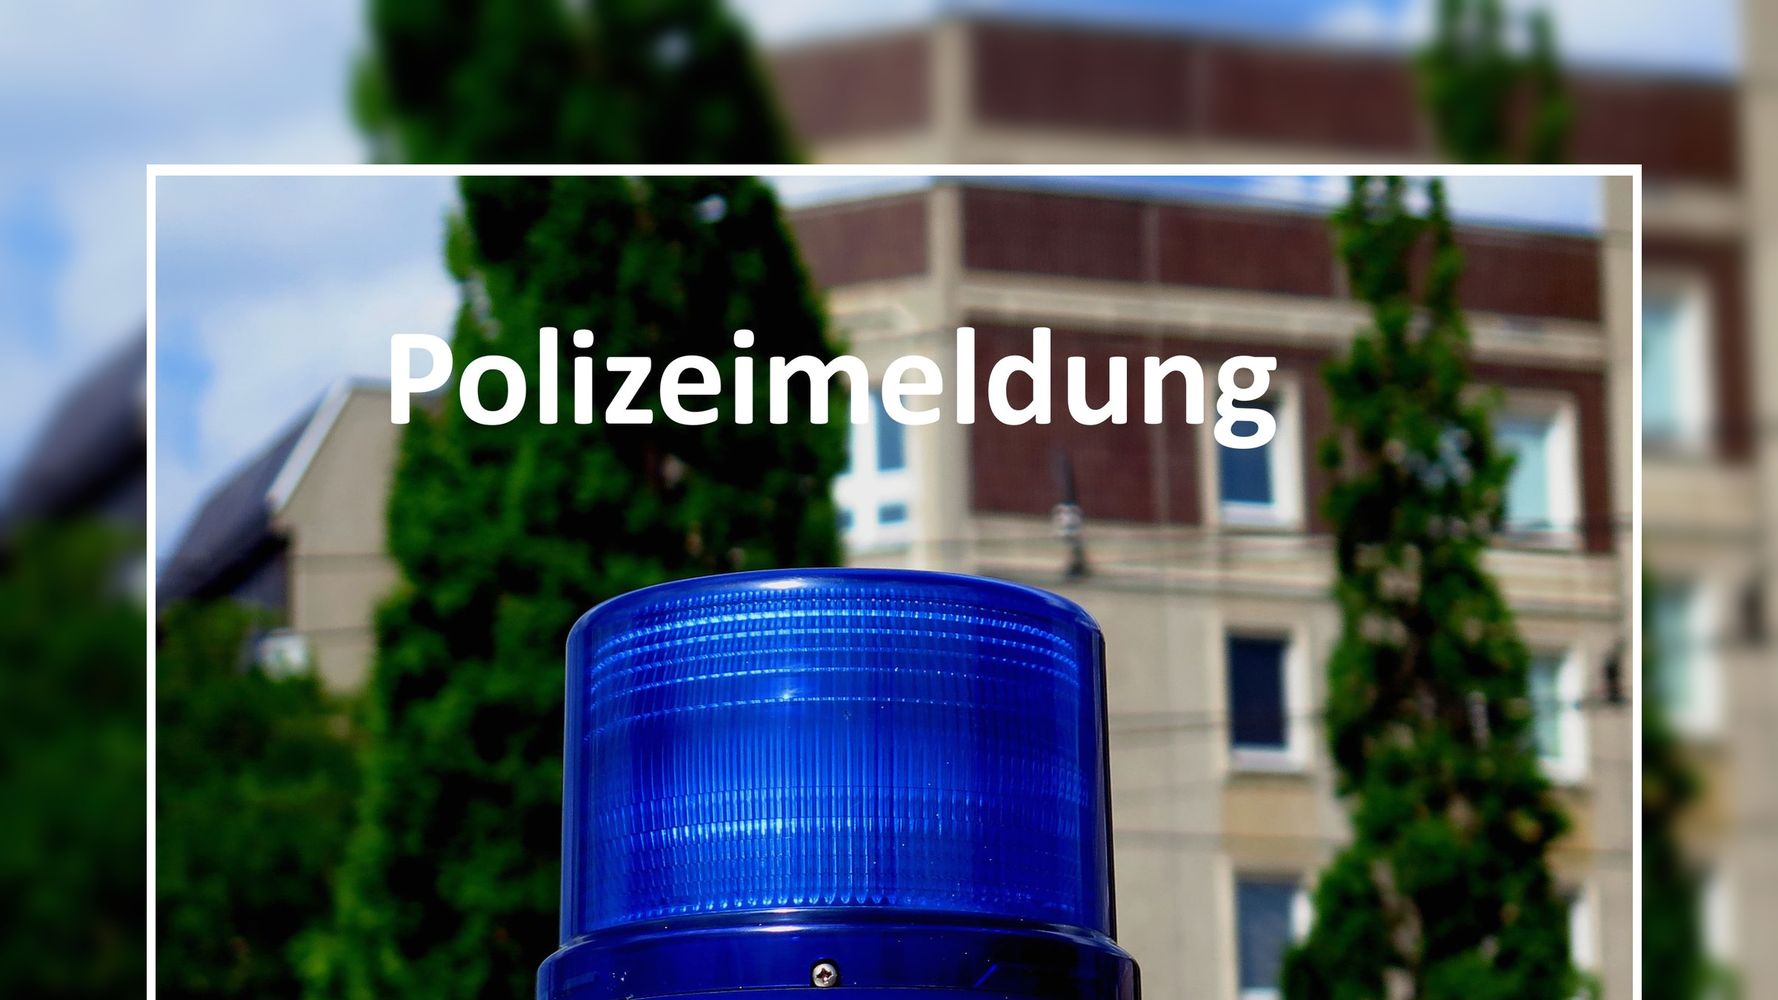 Polizeimeldung - Polizei